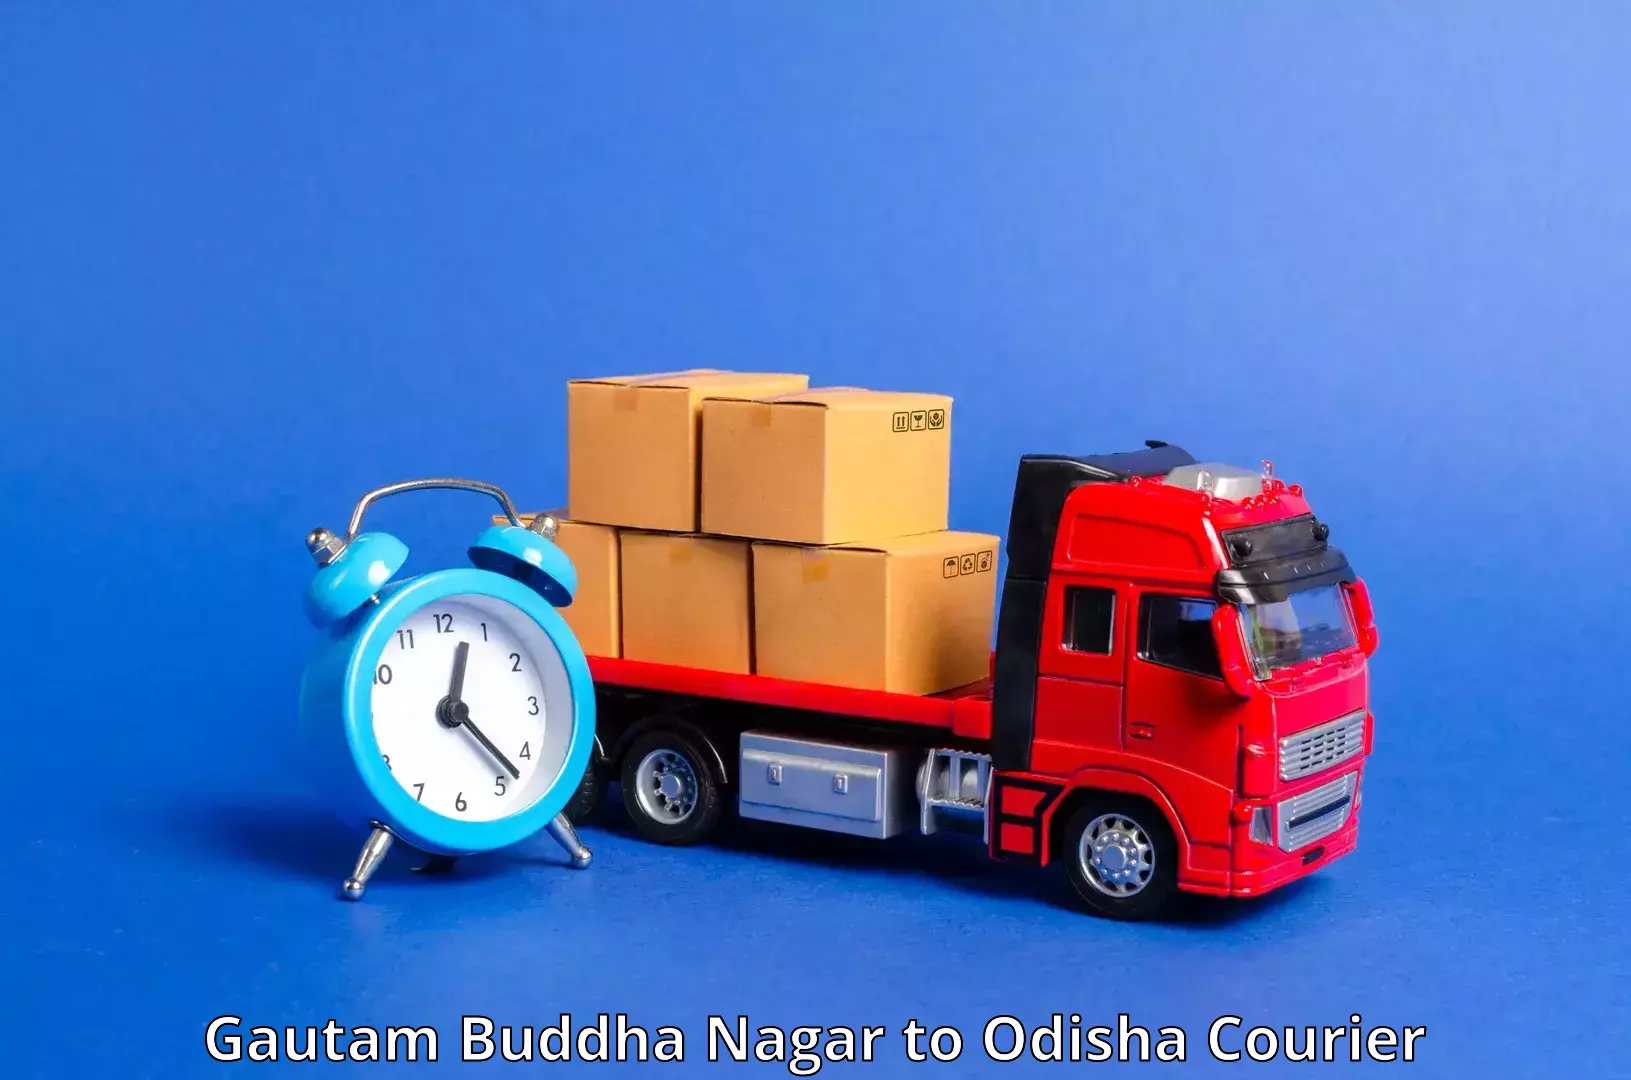 Large package courier Gautam Buddha Nagar to Junagarh Kalahandi